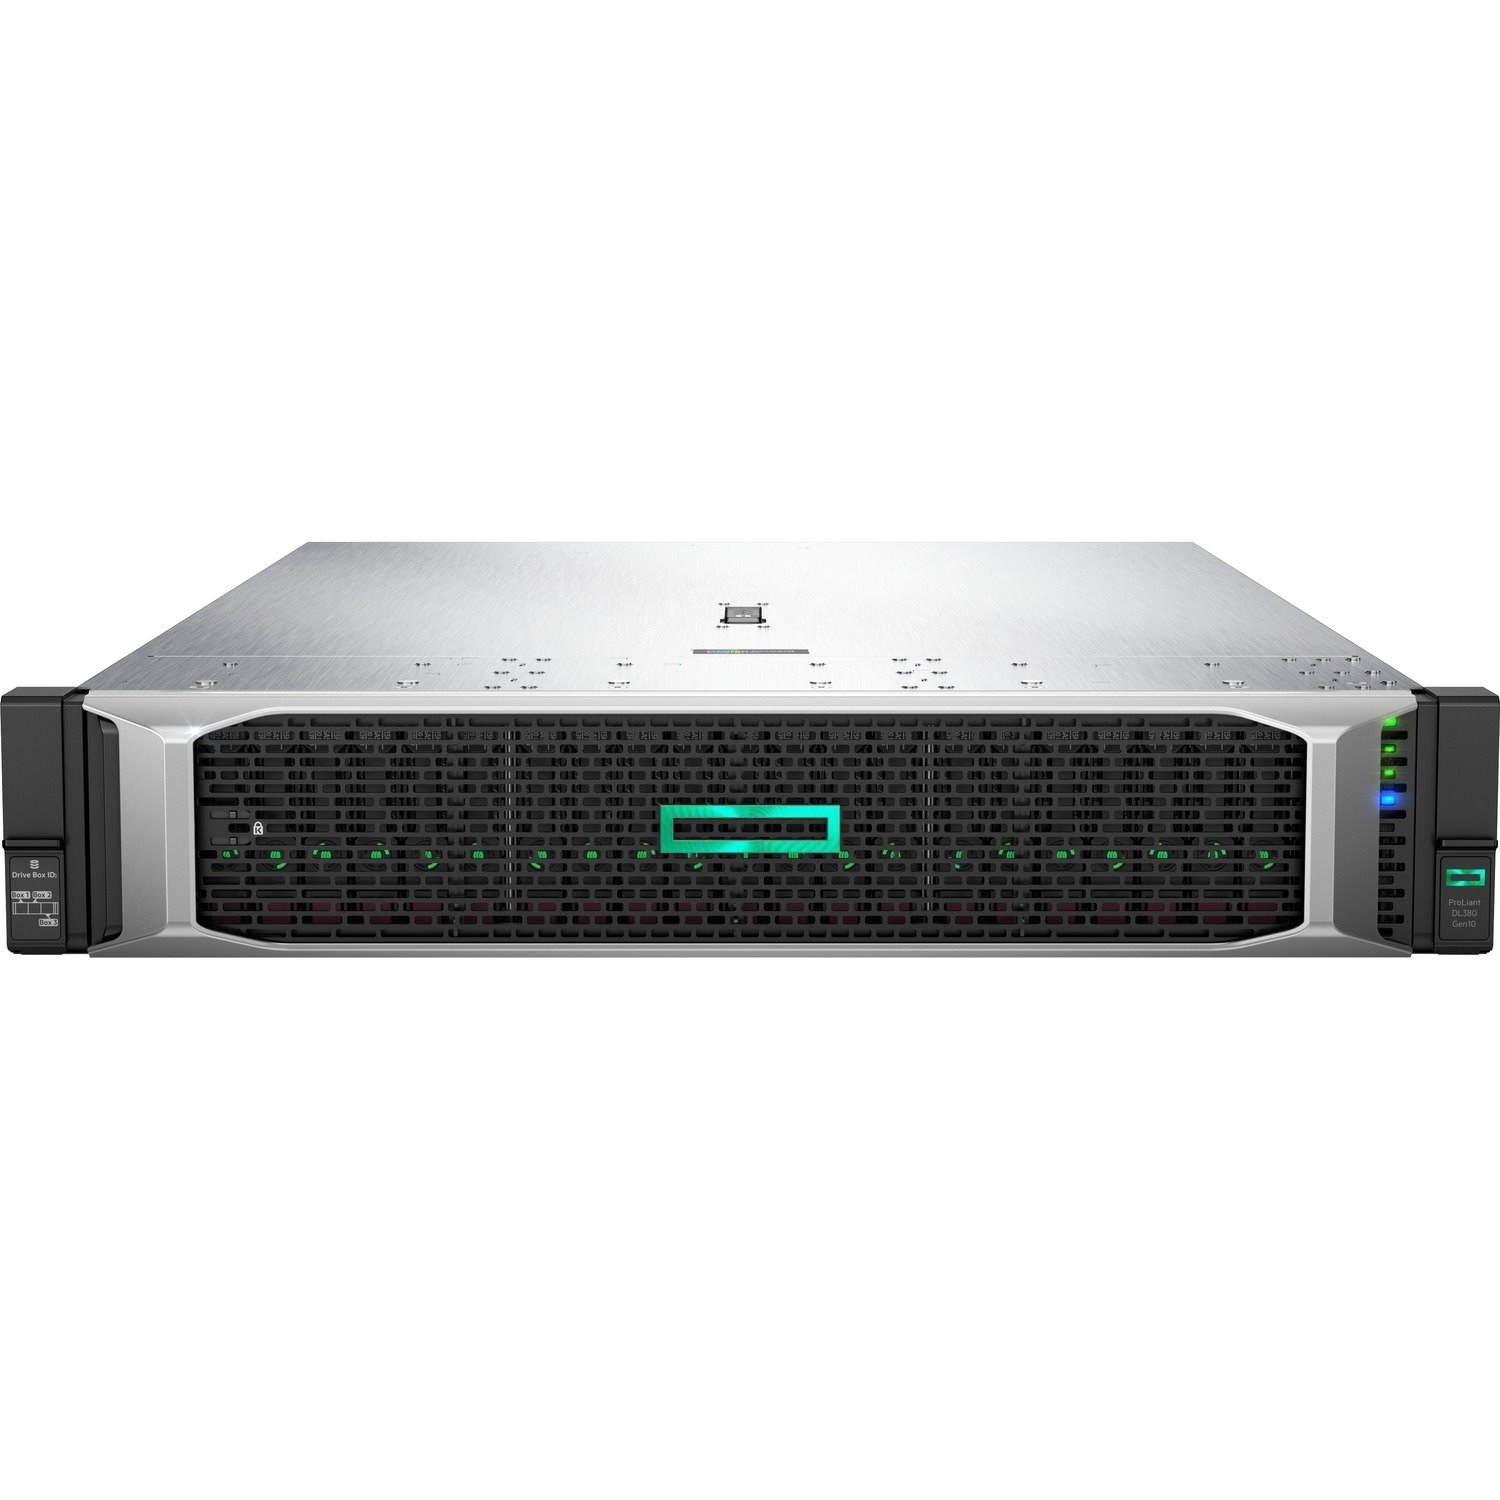 HPE ProLiant DL380 G10 2U Rack Server - 1 x Intel Xeon Silver 4214R 2.40 GHz - 32 GB RAM - Serial ATA, 12Gb/s SAS Controller